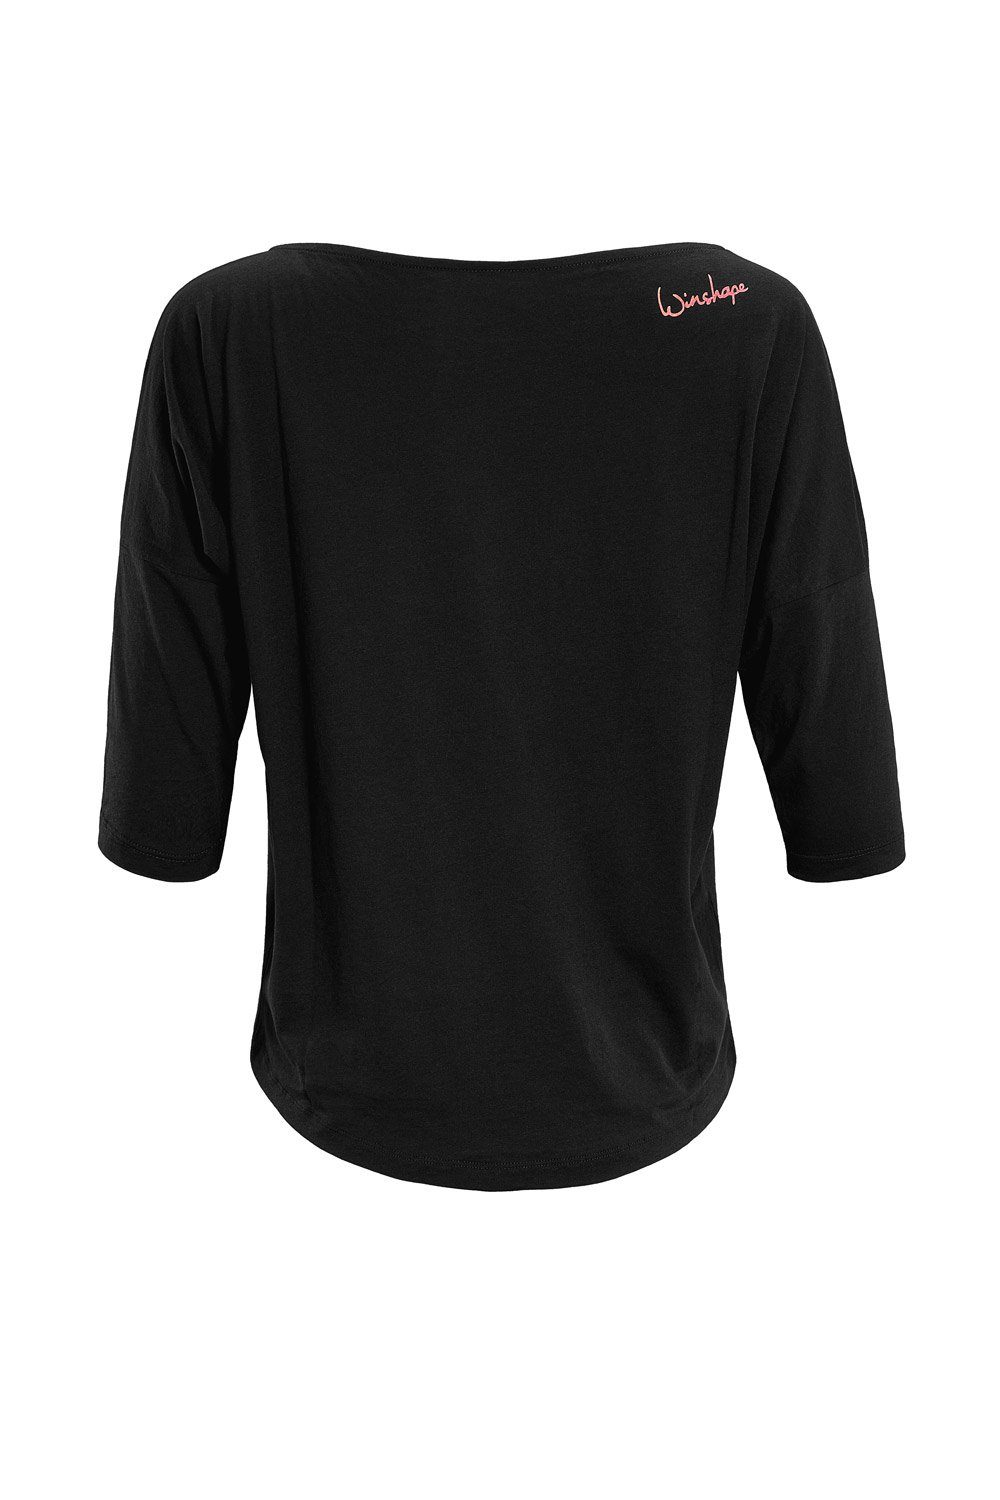 Winshape 3/4-Arm-Shirt MCS001 ultra leicht mit Neon coralfarbenem Glitzer- Aufdruck